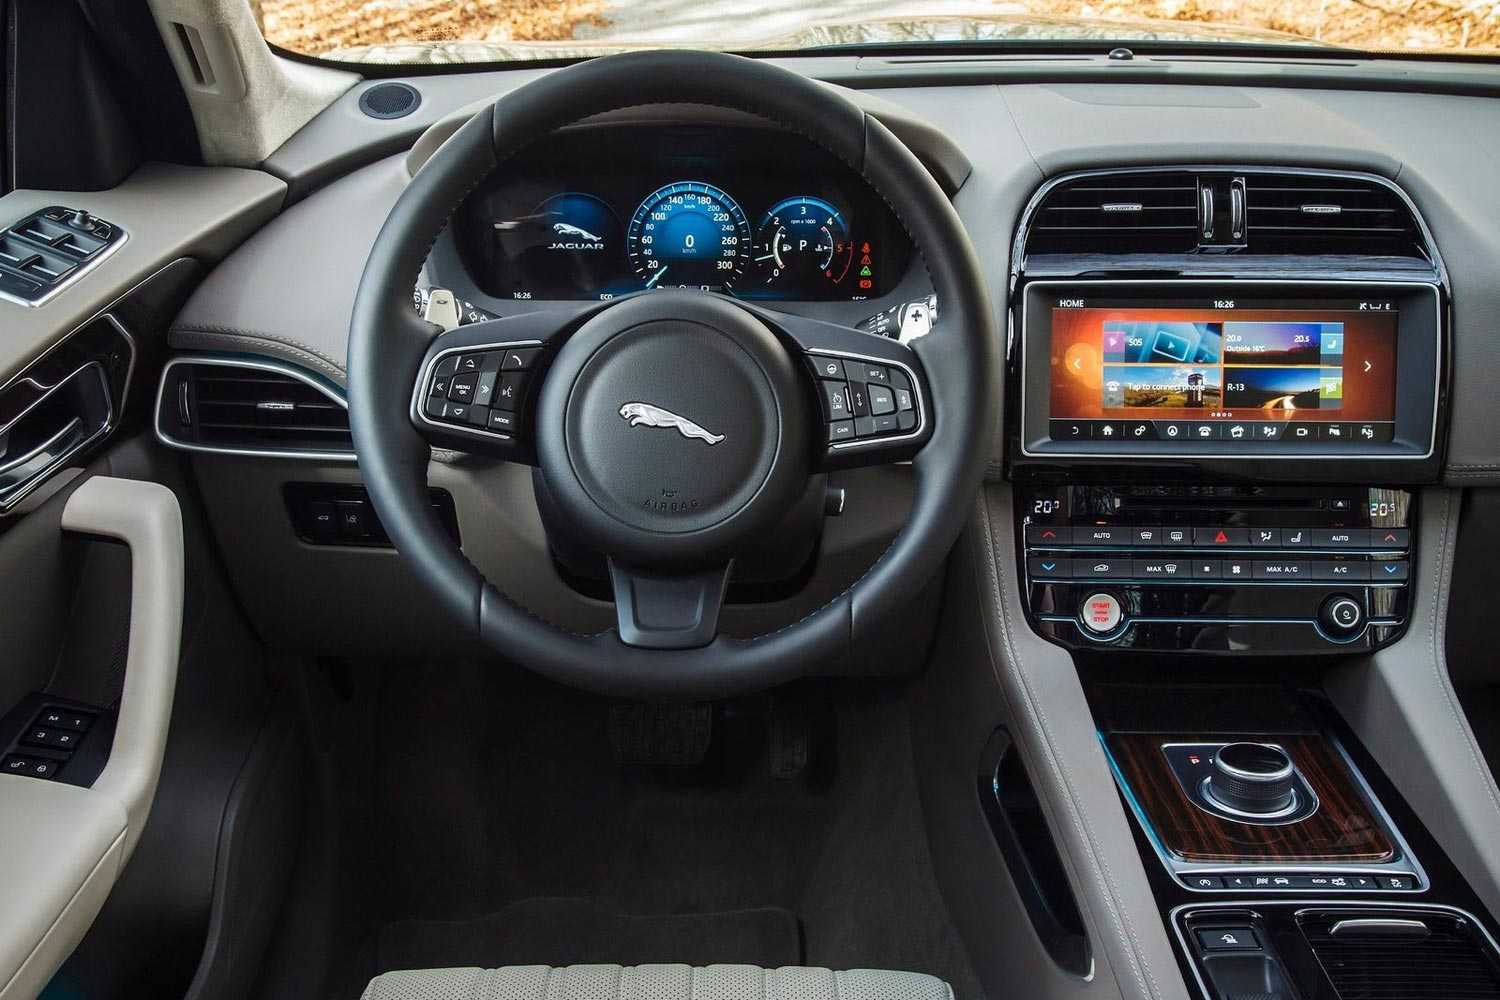 Jaguar f-pace 2019-2020 цена, технические характеристики, фото, видео тест-драйв ф-пейс